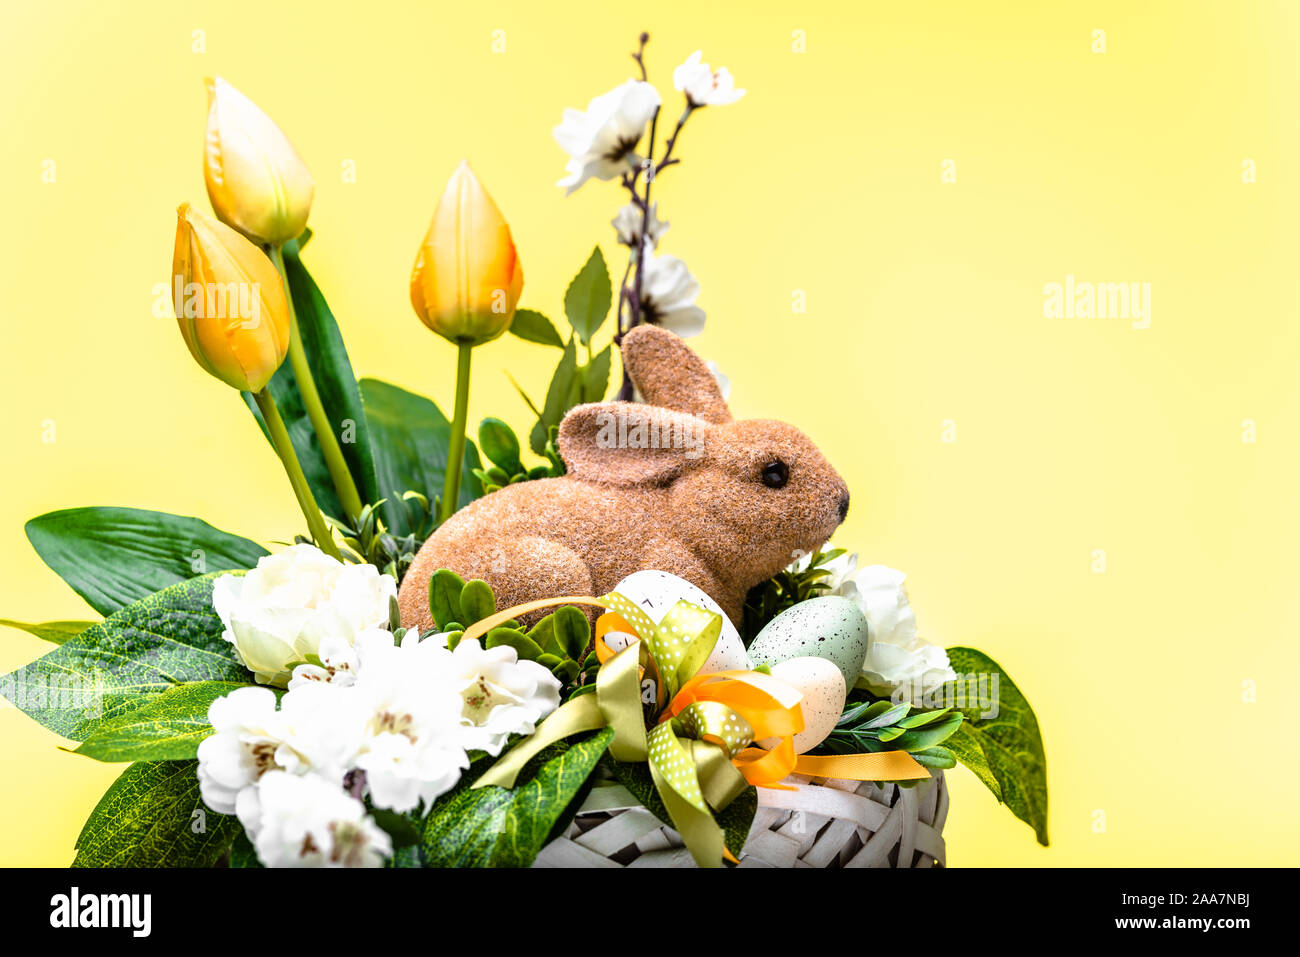 Lapin de Pâques, printemps décoration de pâques avec des fleurs et des œufs dans un panier Banque D'Images